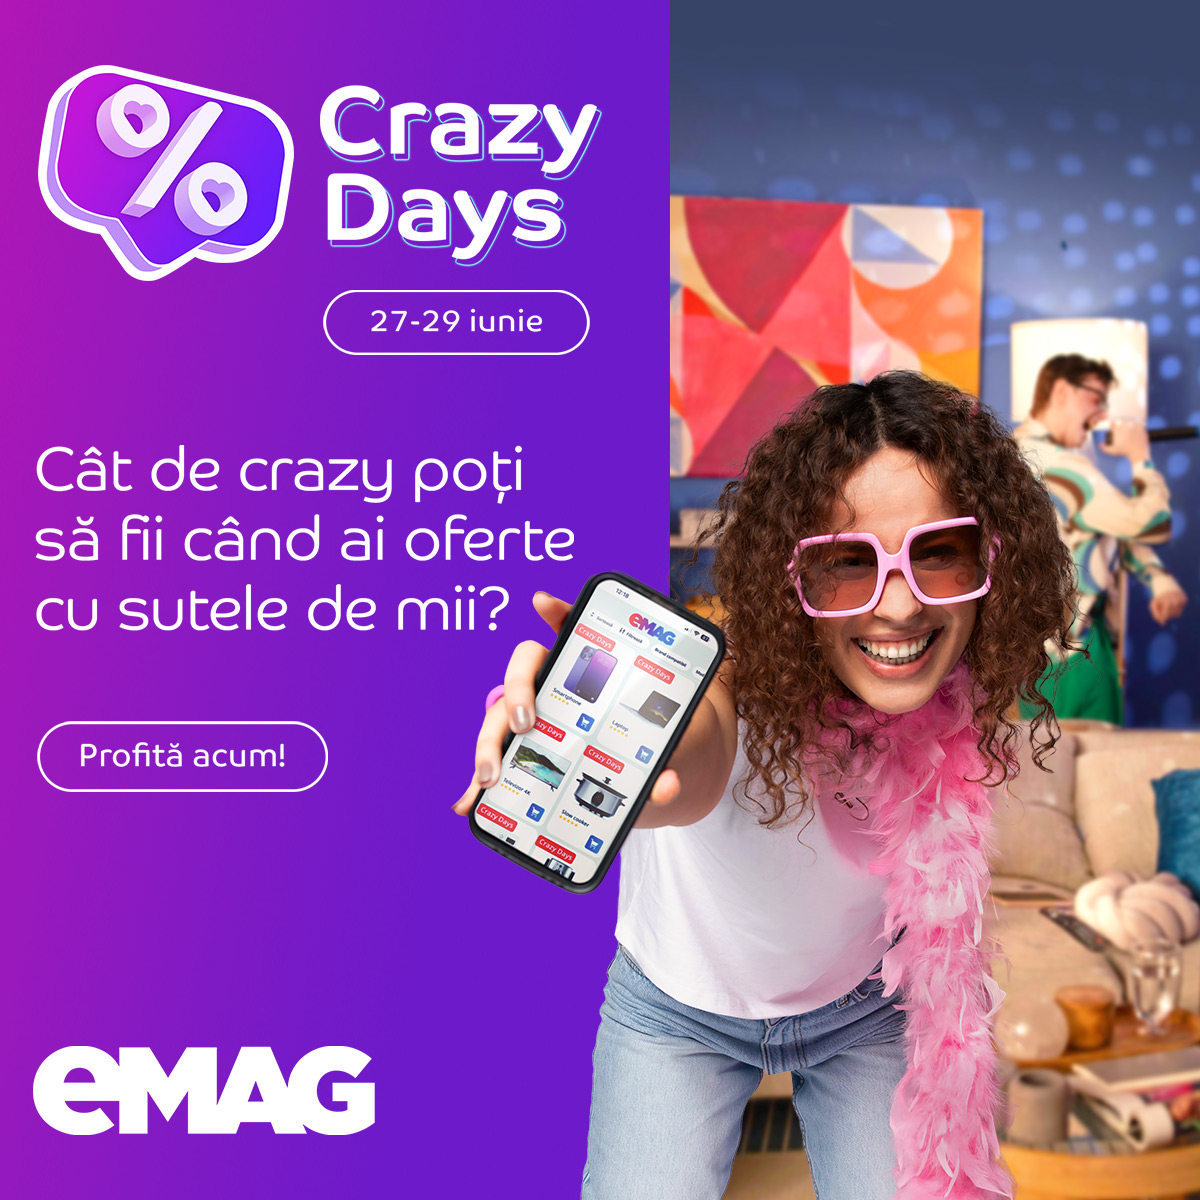 Crazy Days 27-29 iunie